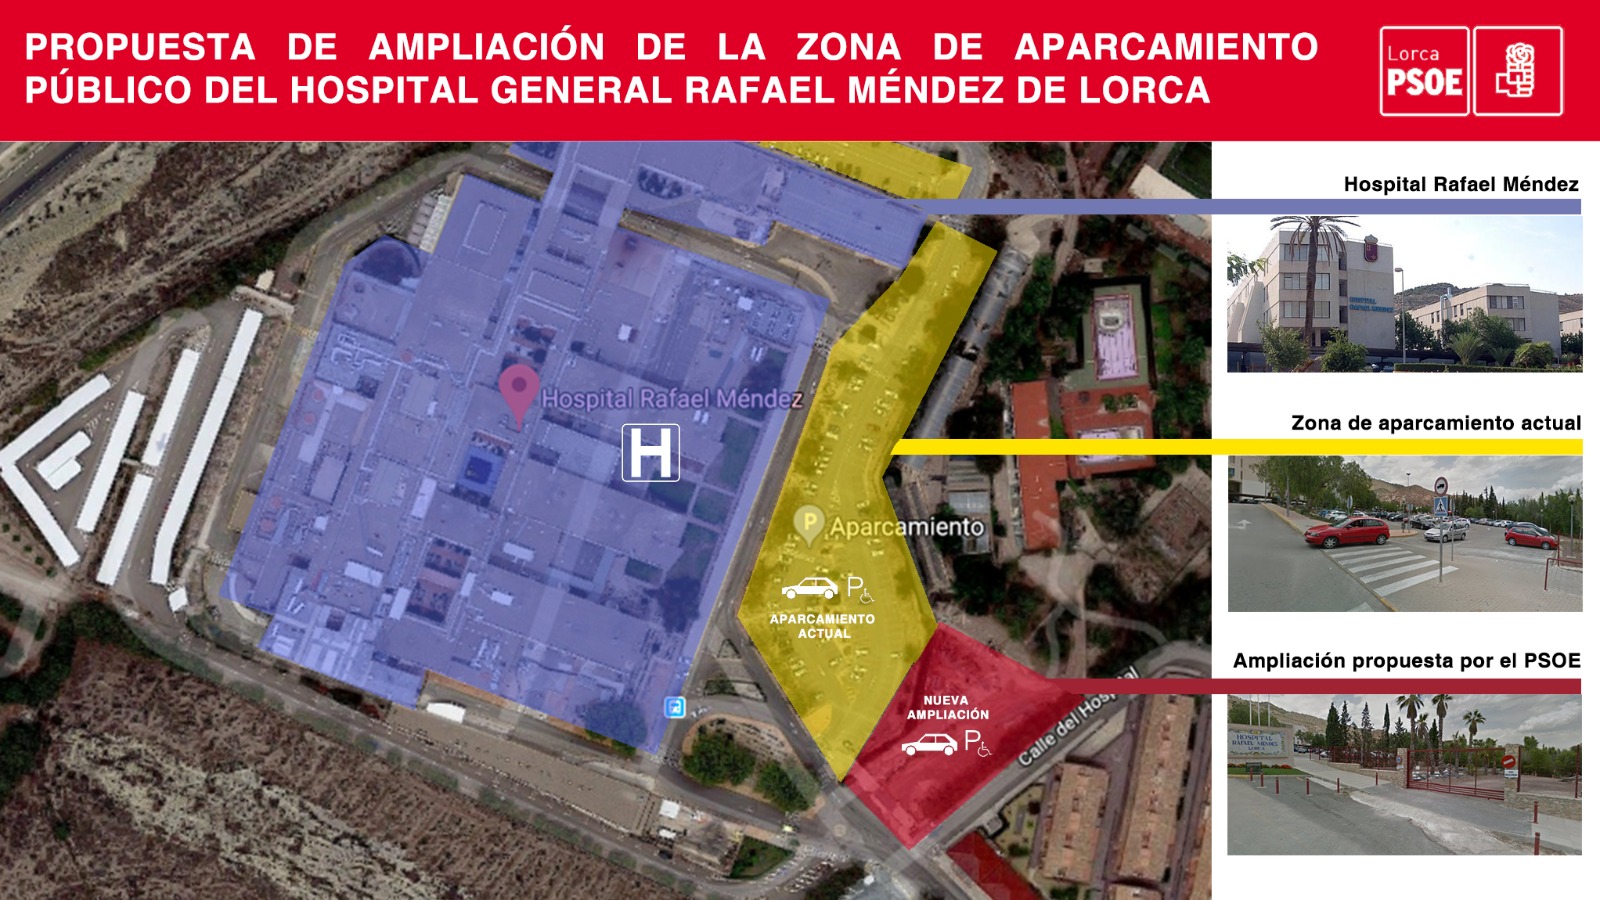 El Pleno del Ayuntamiento de Lorca decide por unanimidad estudiar la ampliación del aparcamiento público del Rafael Méndez, a petición del PSOE